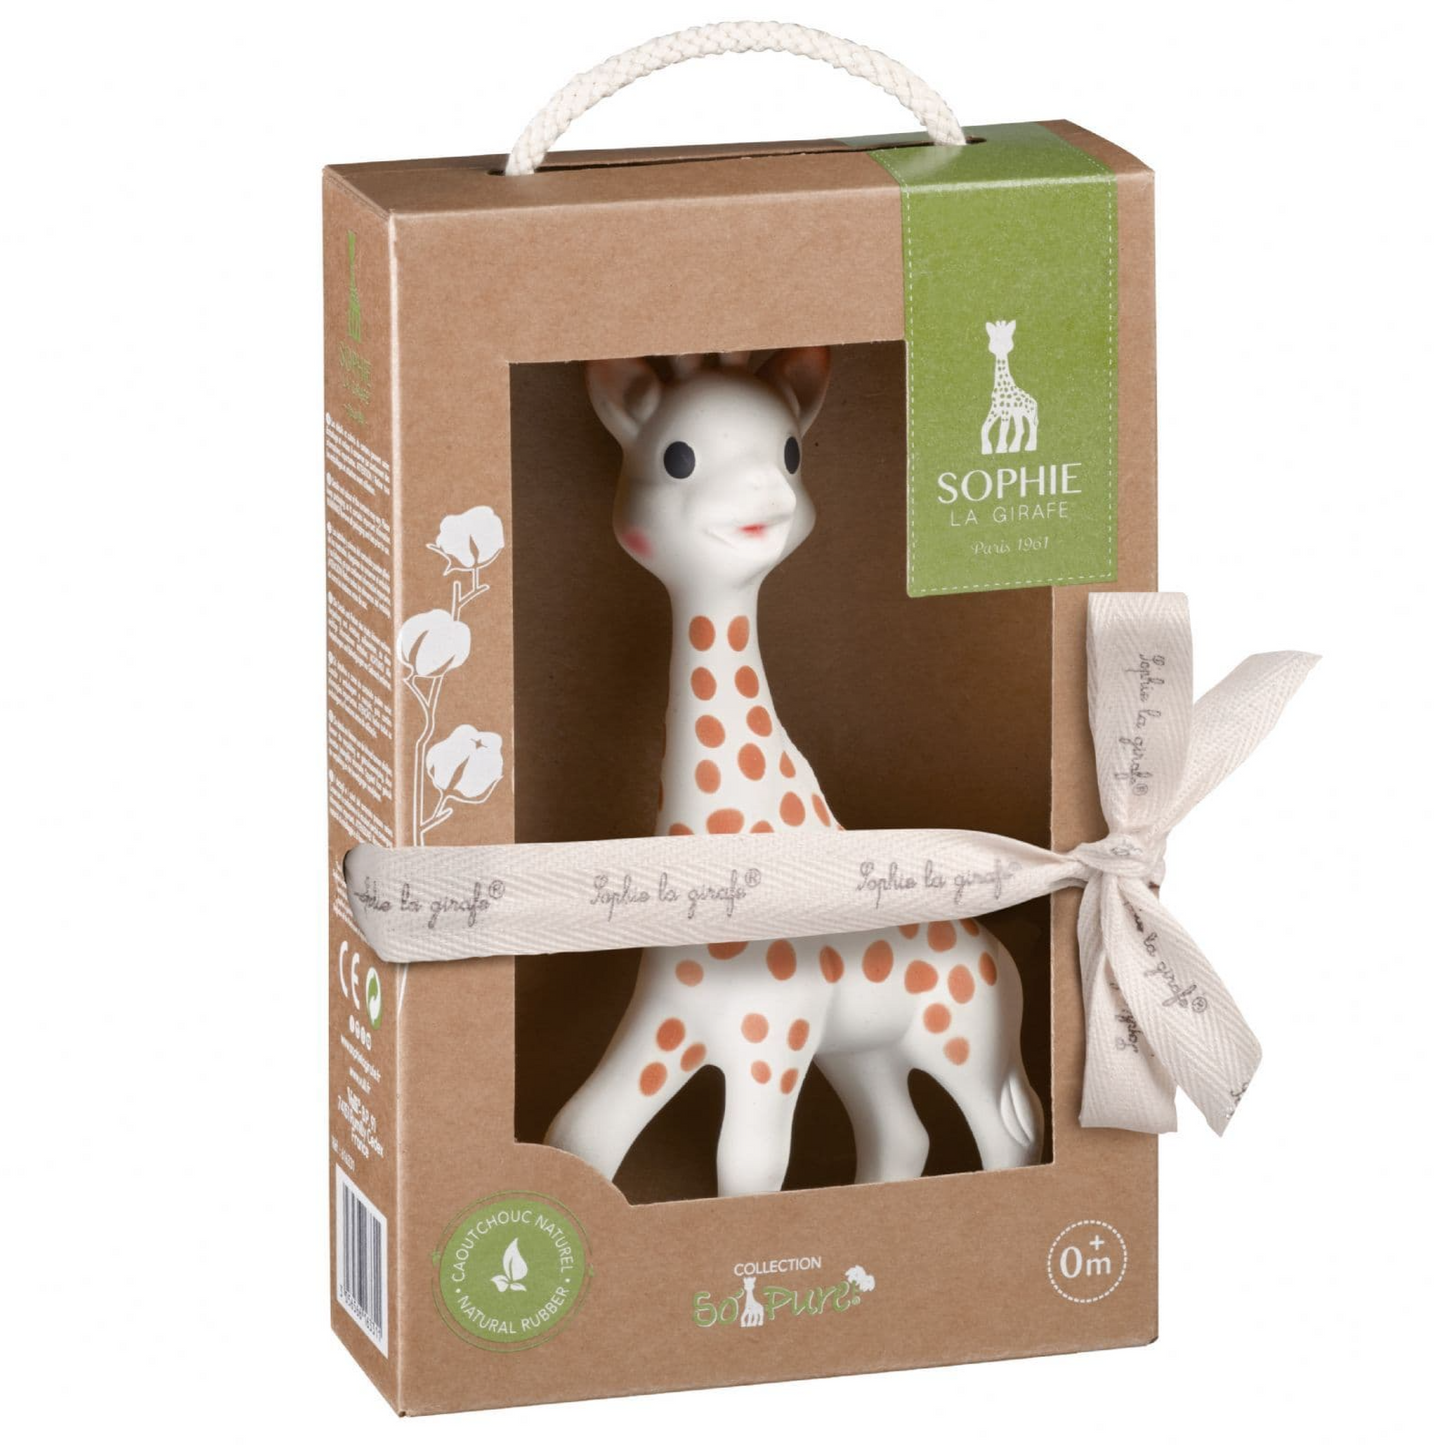 Sophie la girafe - So' Pure Sophie La Girafe